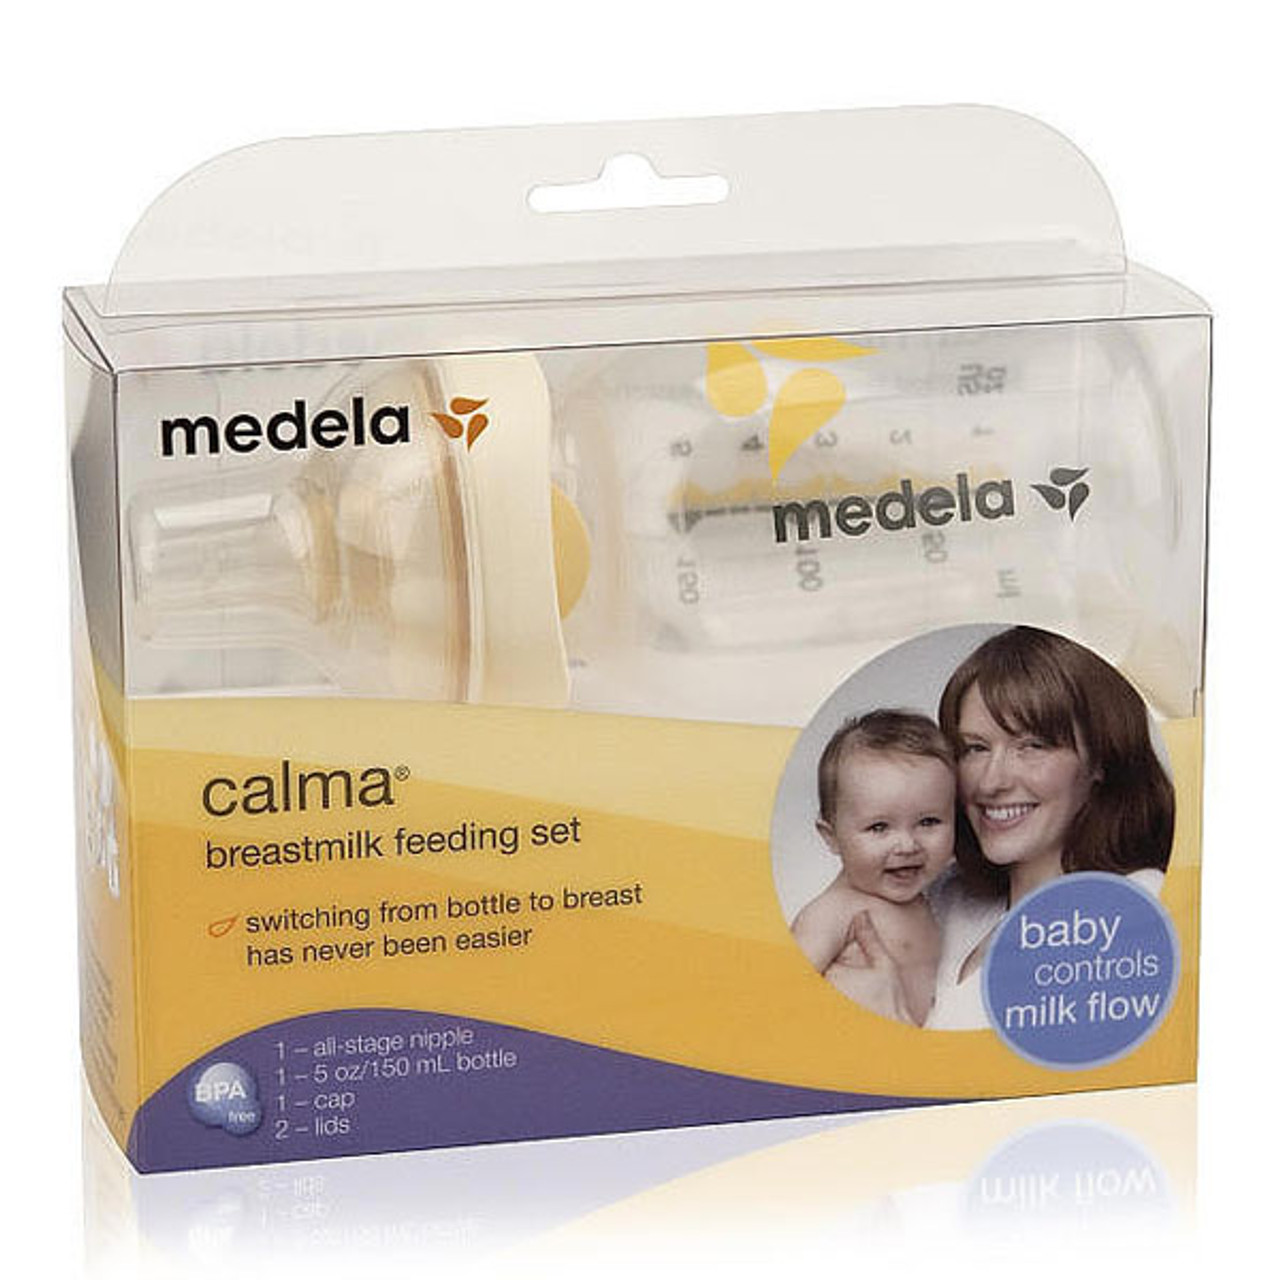 Medela Calma Breastmilk Feeding | Official Retailer |